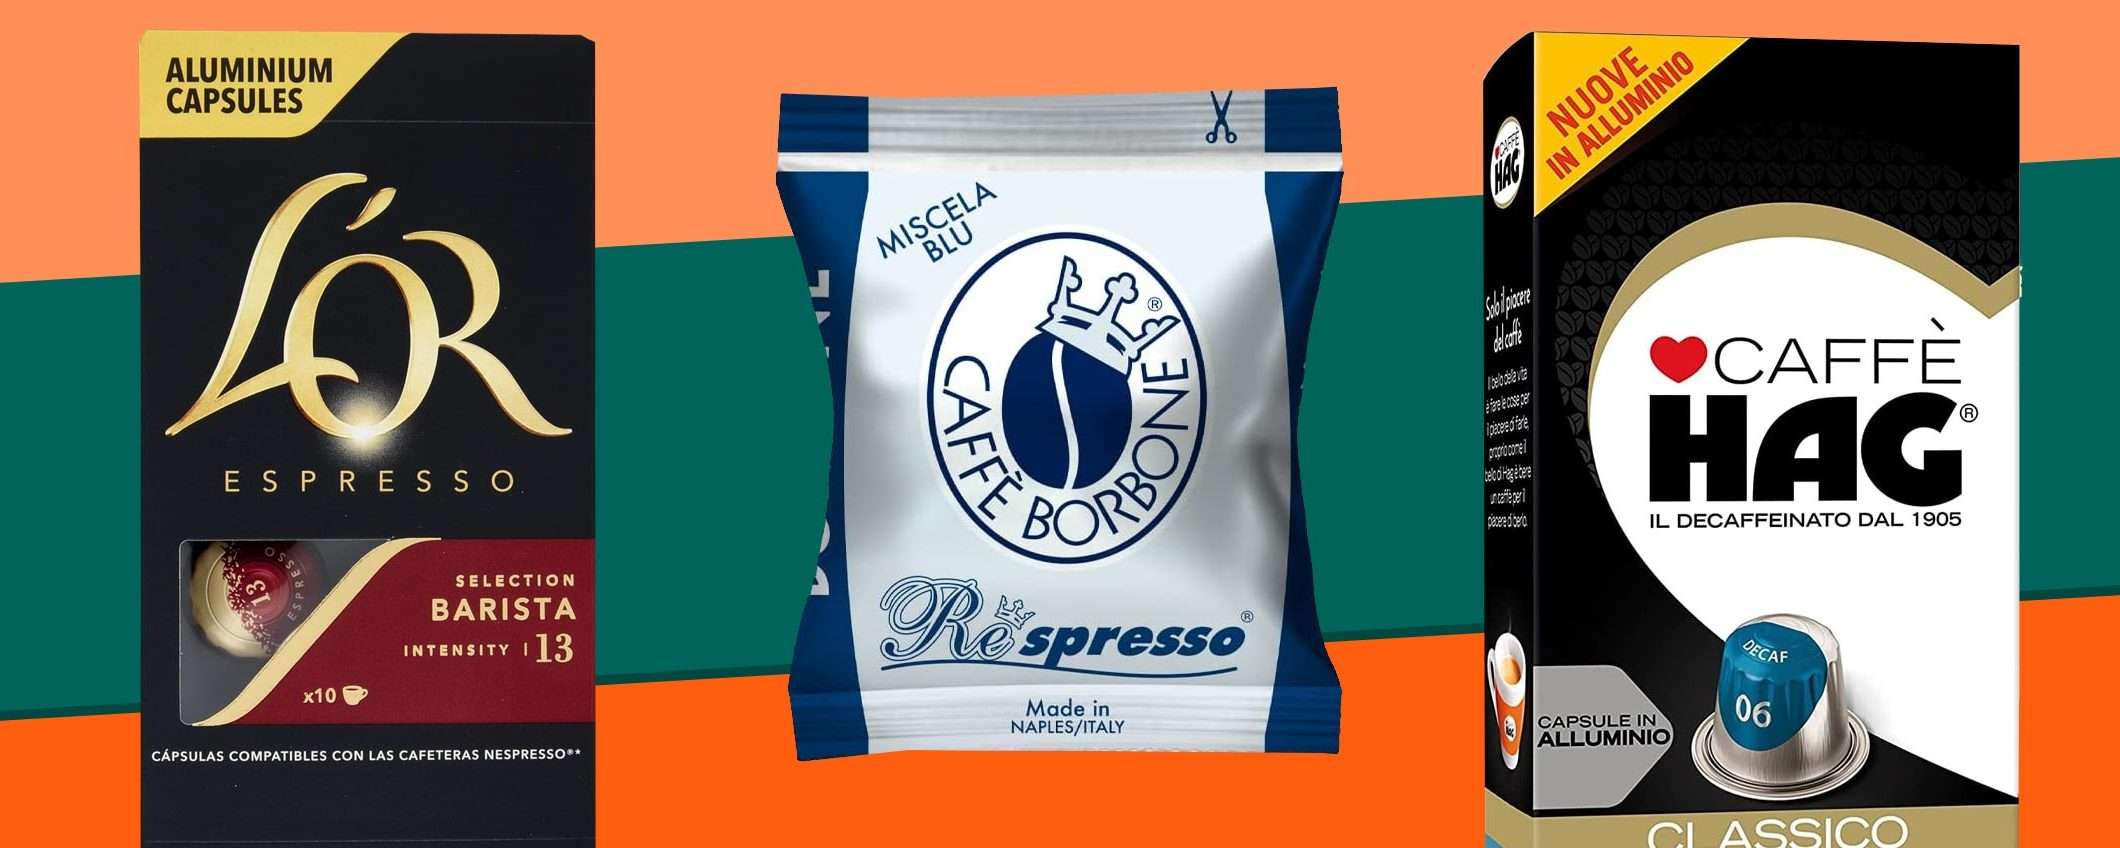 Black Friday e caffè: sconti sulle capsule Nespresso